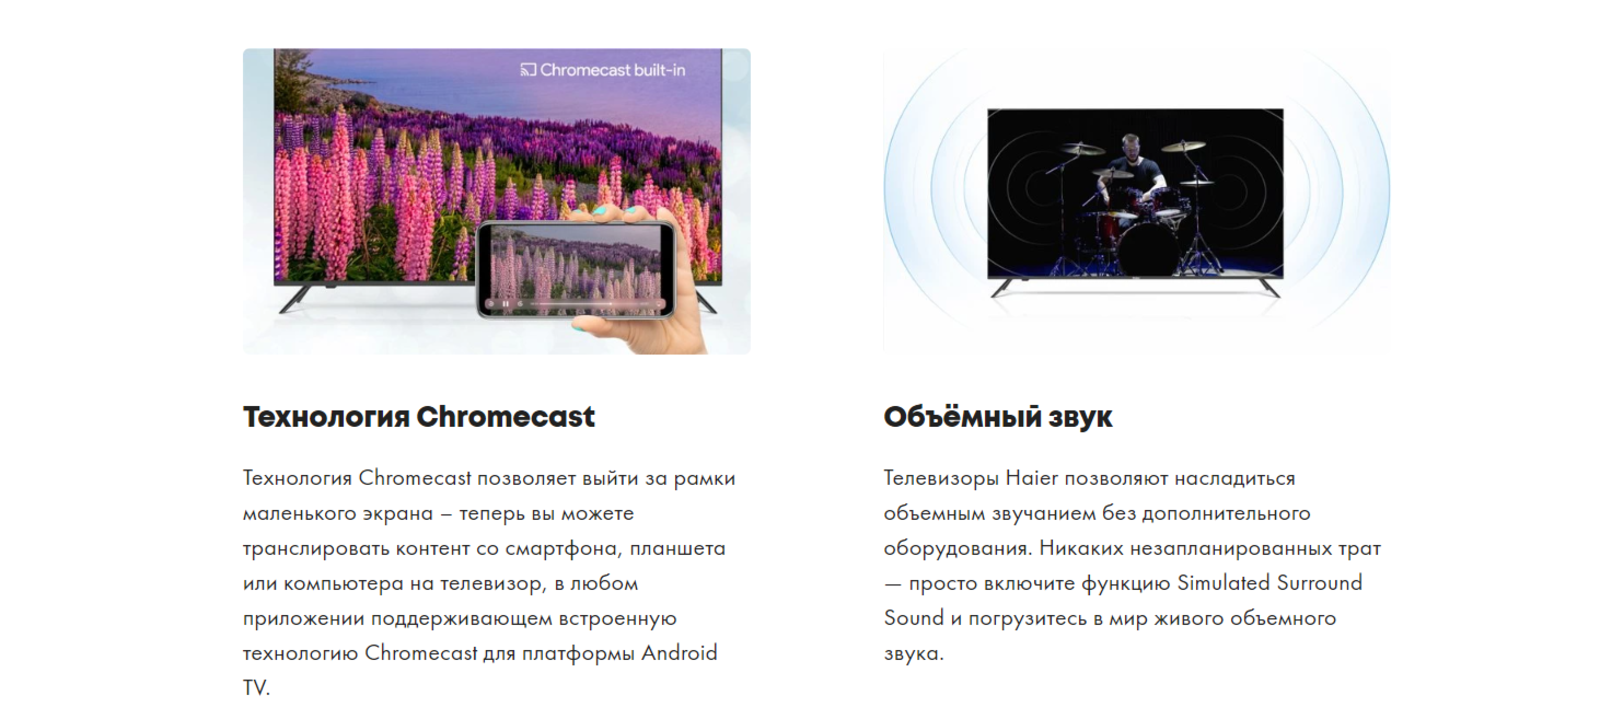 Технология Chromecast. Объёмный звук